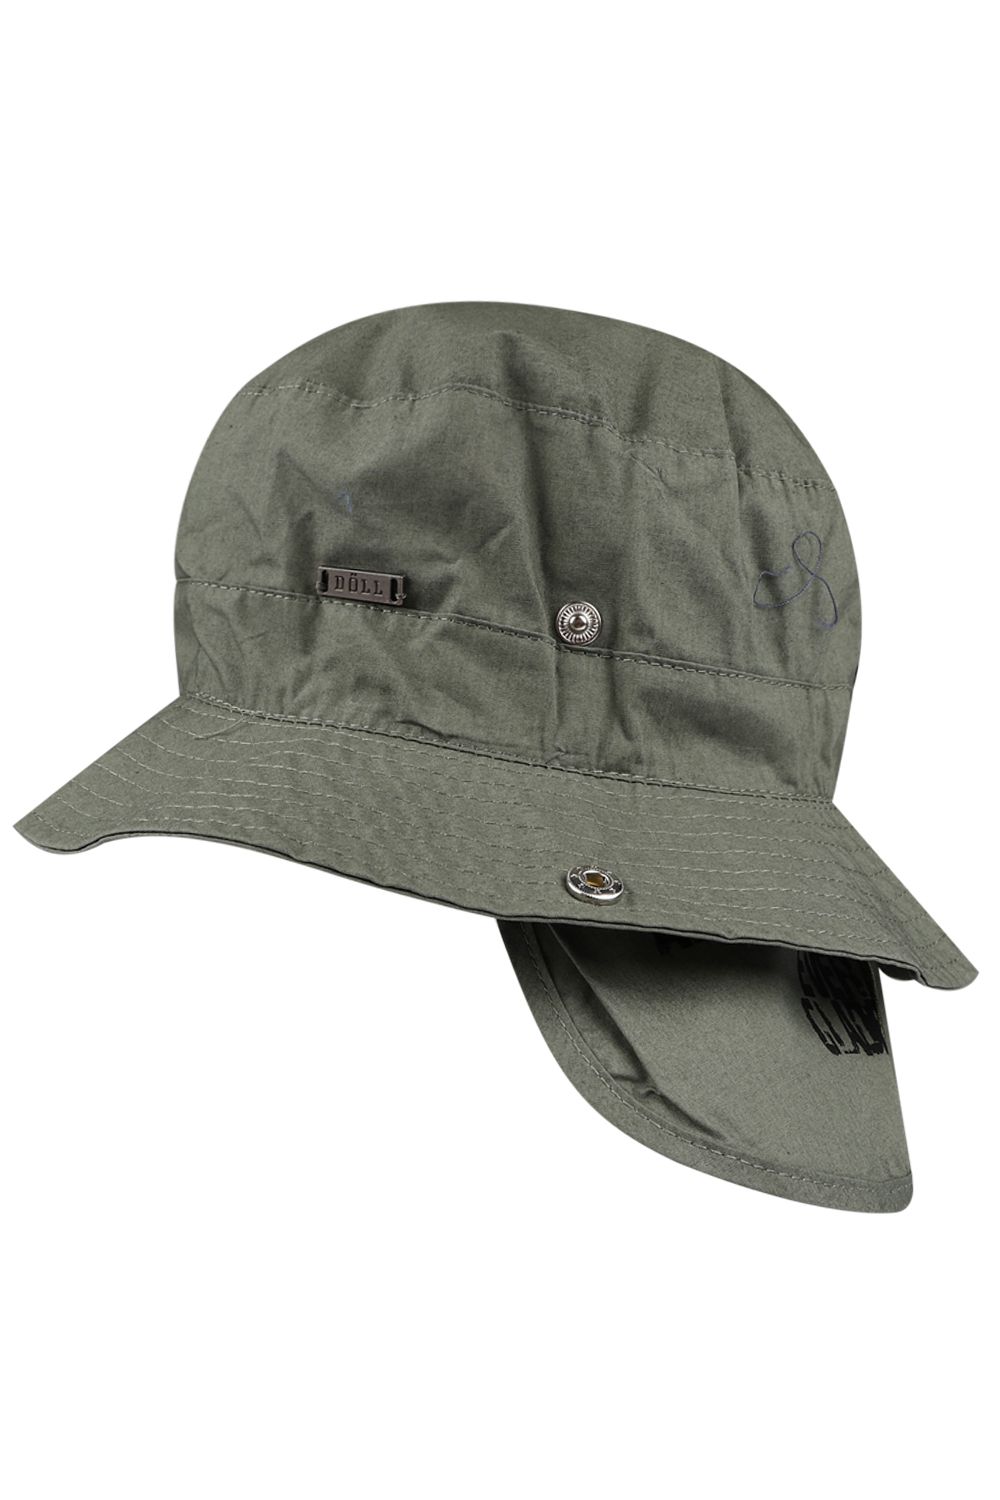 Шляпа Doell, размер 55, цвет зеленый